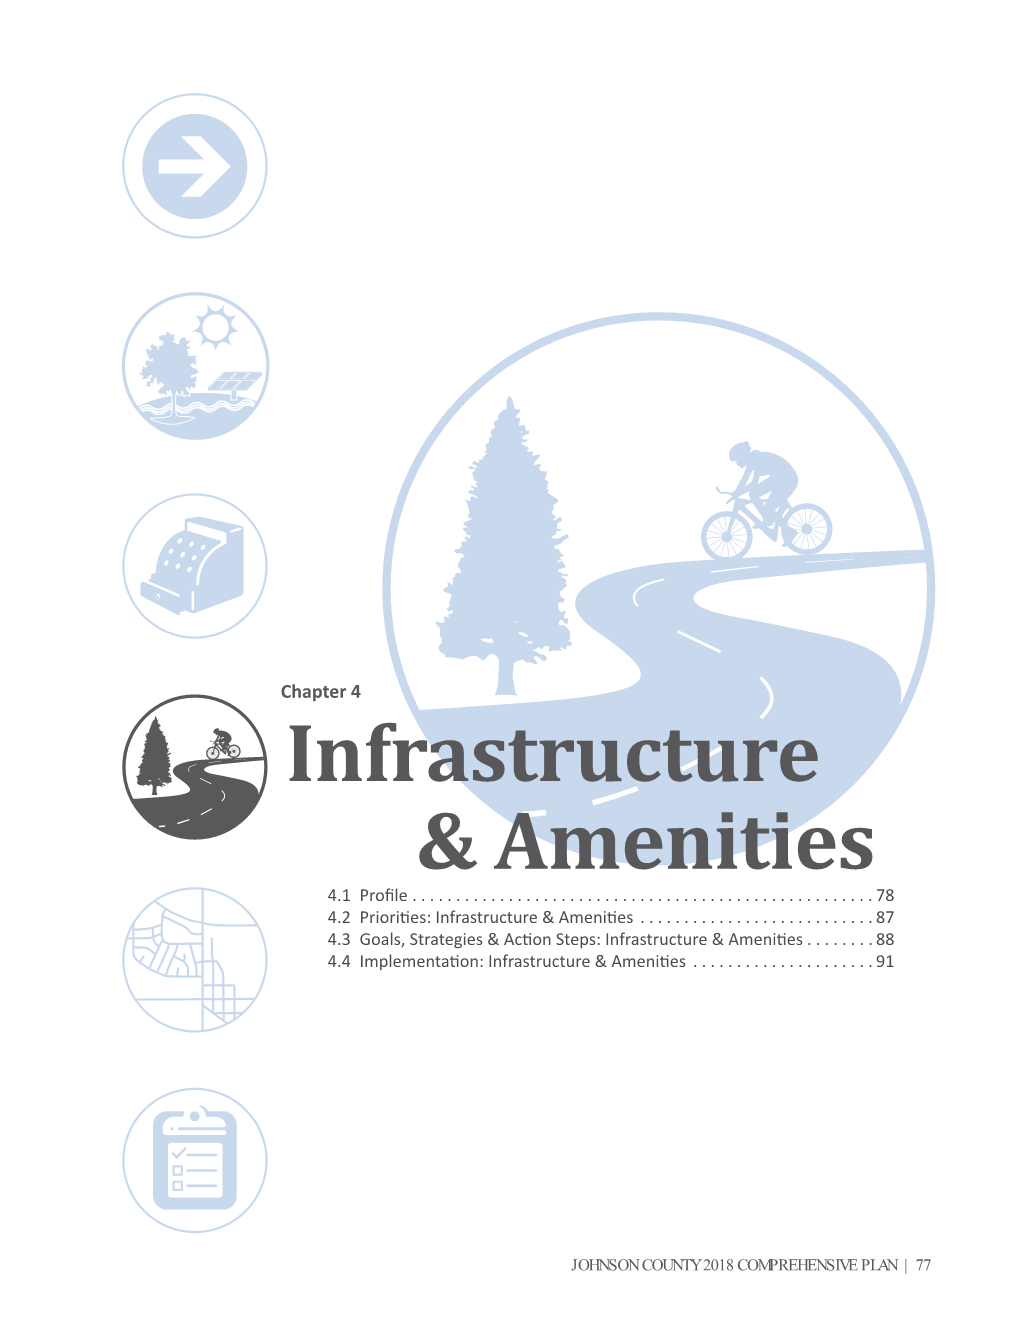 Infrastructure & Amenities